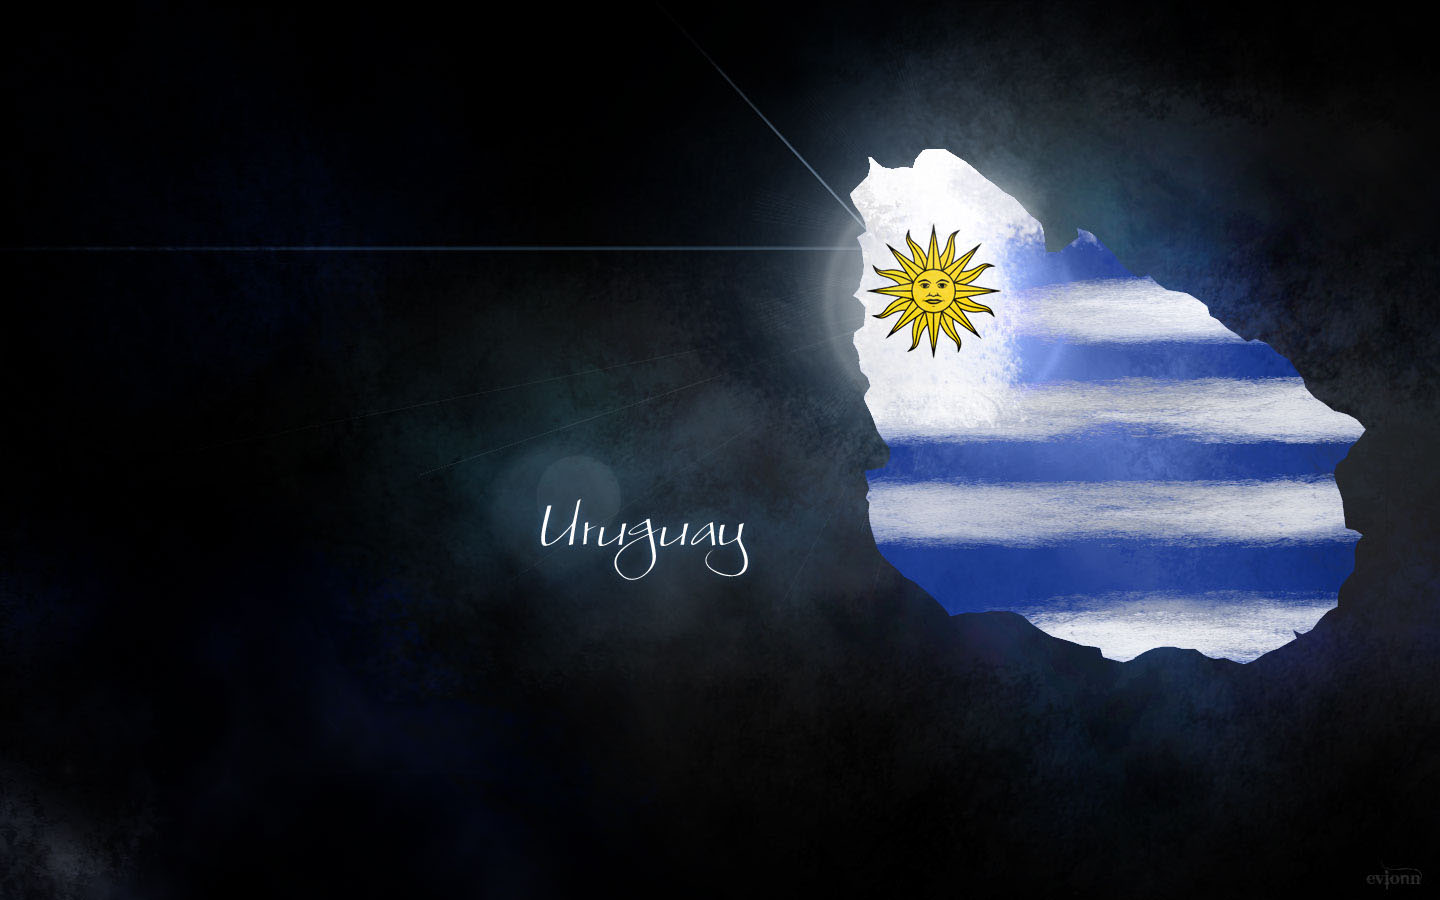 Uruguay Football Wallpaper